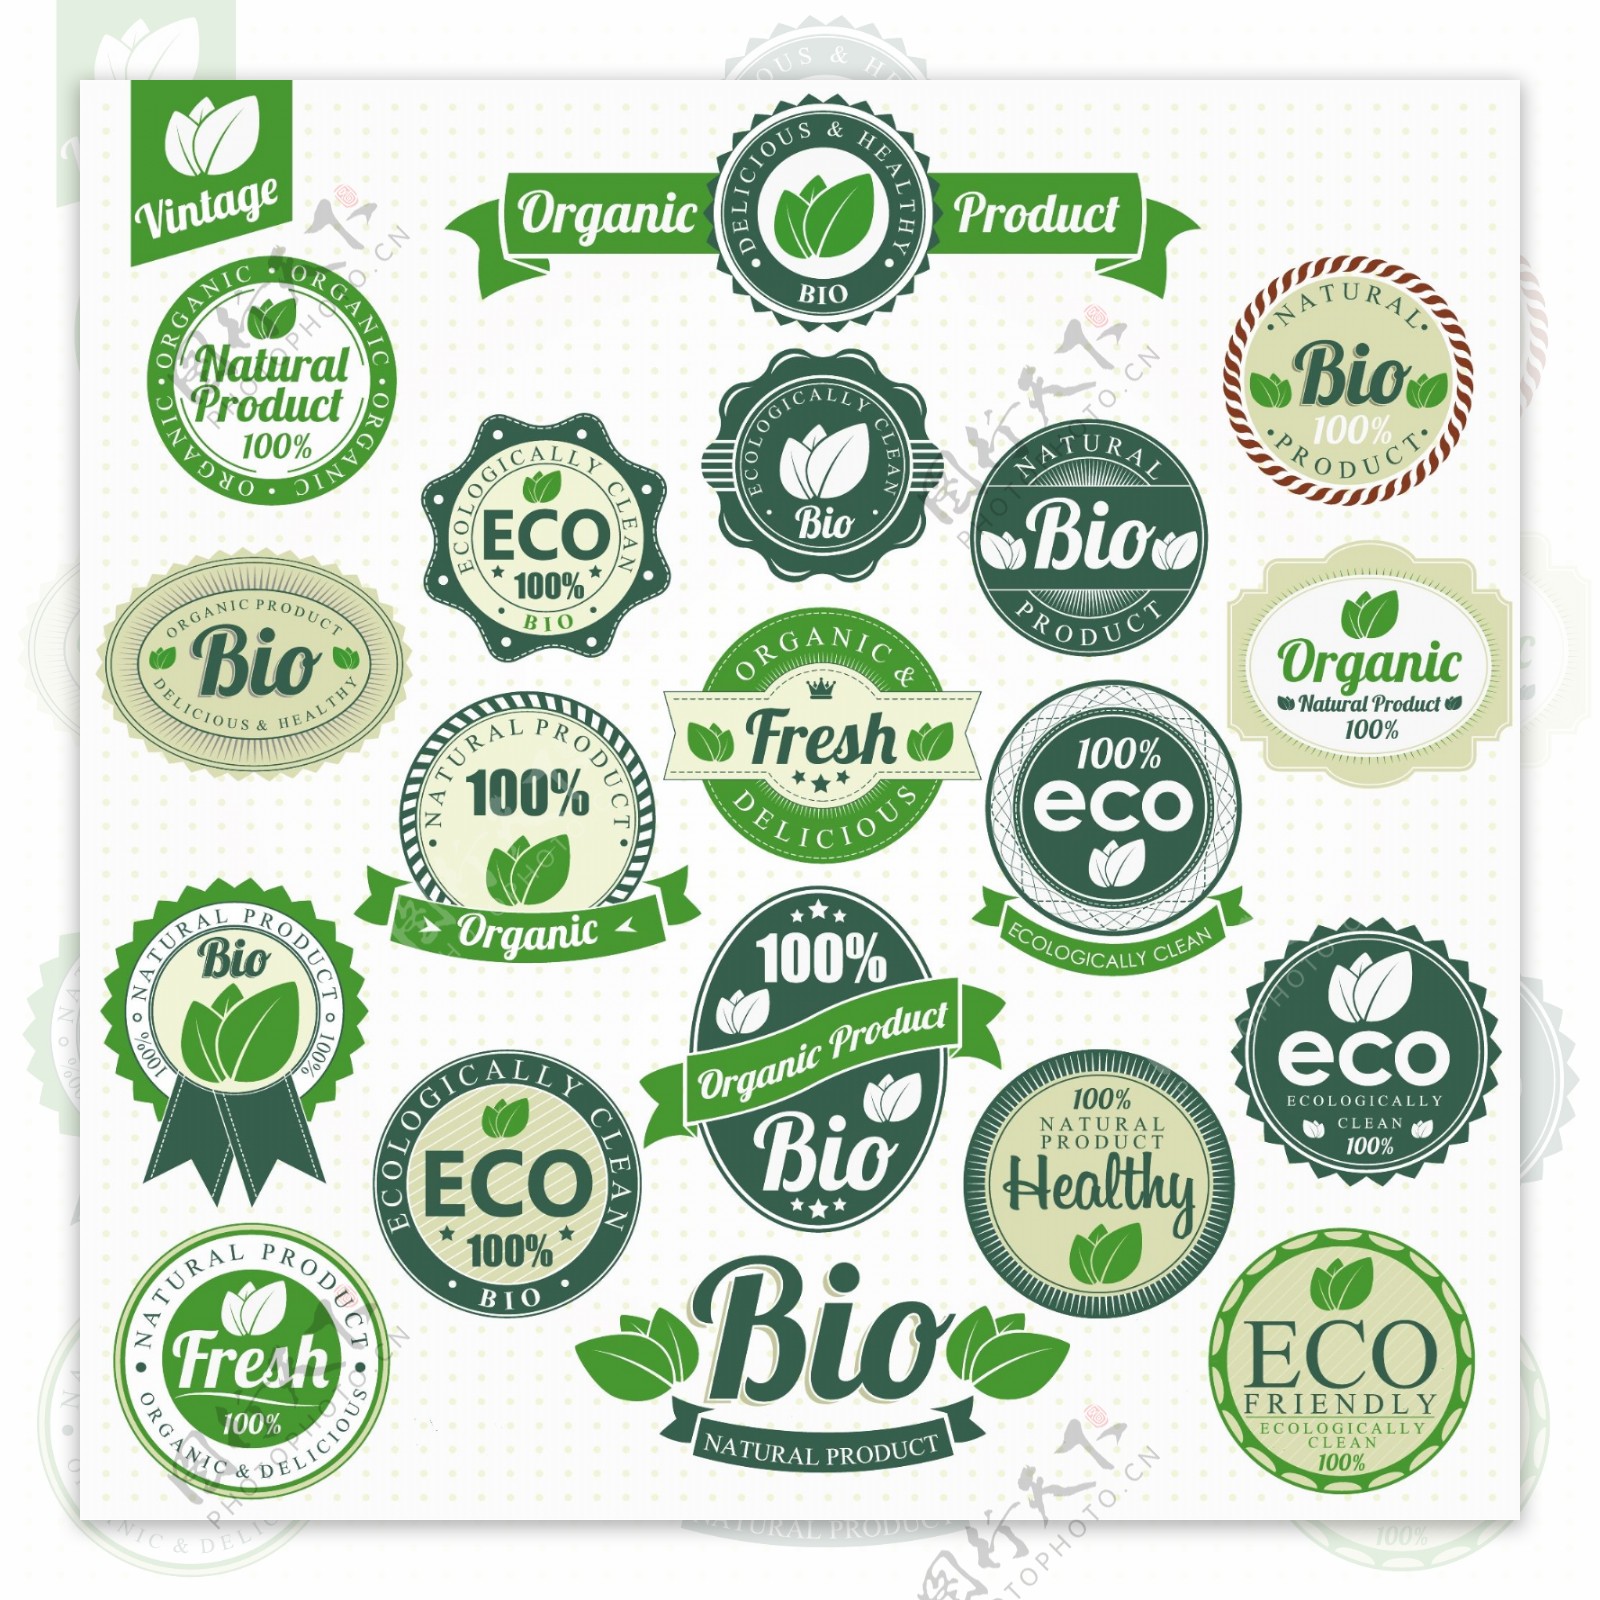 绿色环保小图标